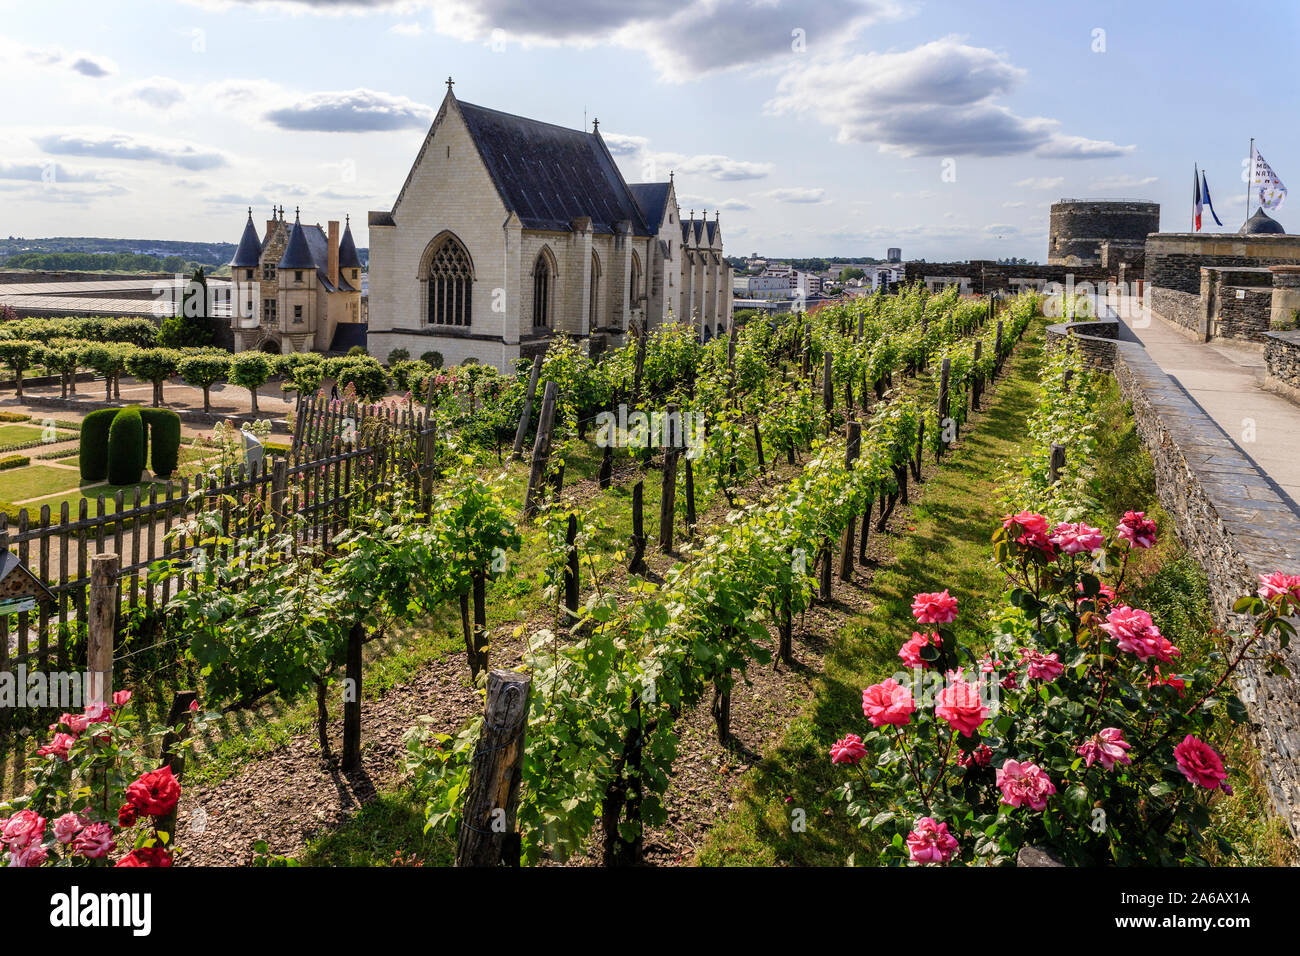 France, Maine et Loire, Angers, Château d'Angers, le Château Angers, la tenture vine garden, cépage Chenin blanc, rangées de vignes et la chapelle // Banque D'Images